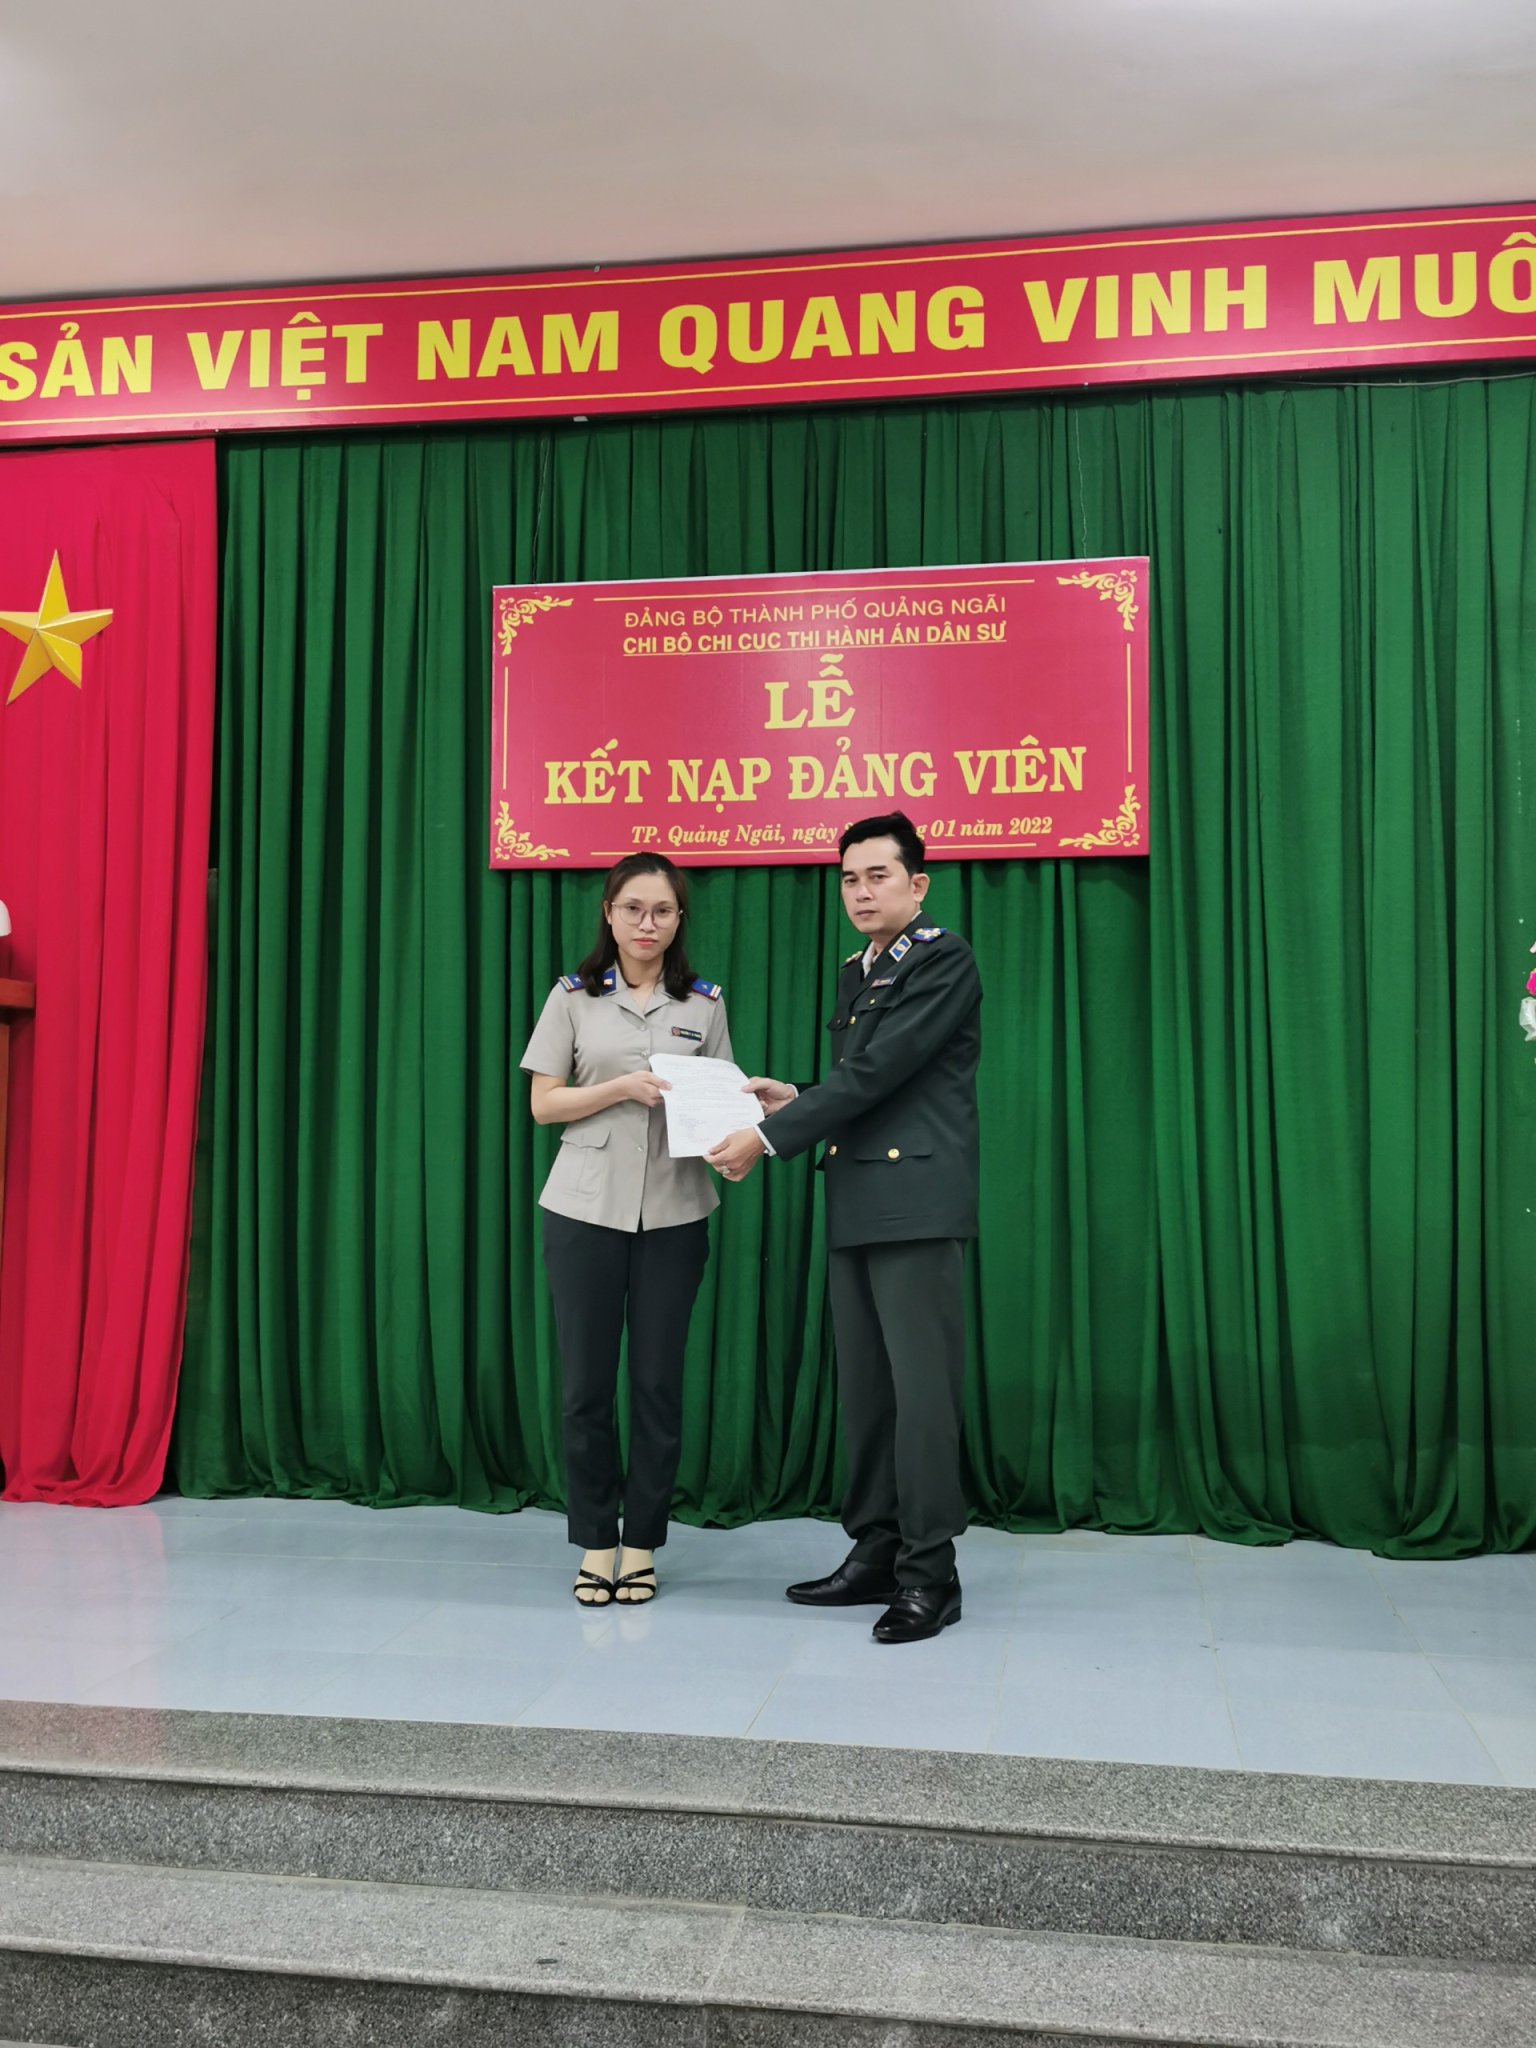 Chi bộ Chi cục Thi hành án dân sự thành phố Quảng Ngãi, tỉnh Quảng Ngãi tổ chức lễ kết nạp đảng viên mới